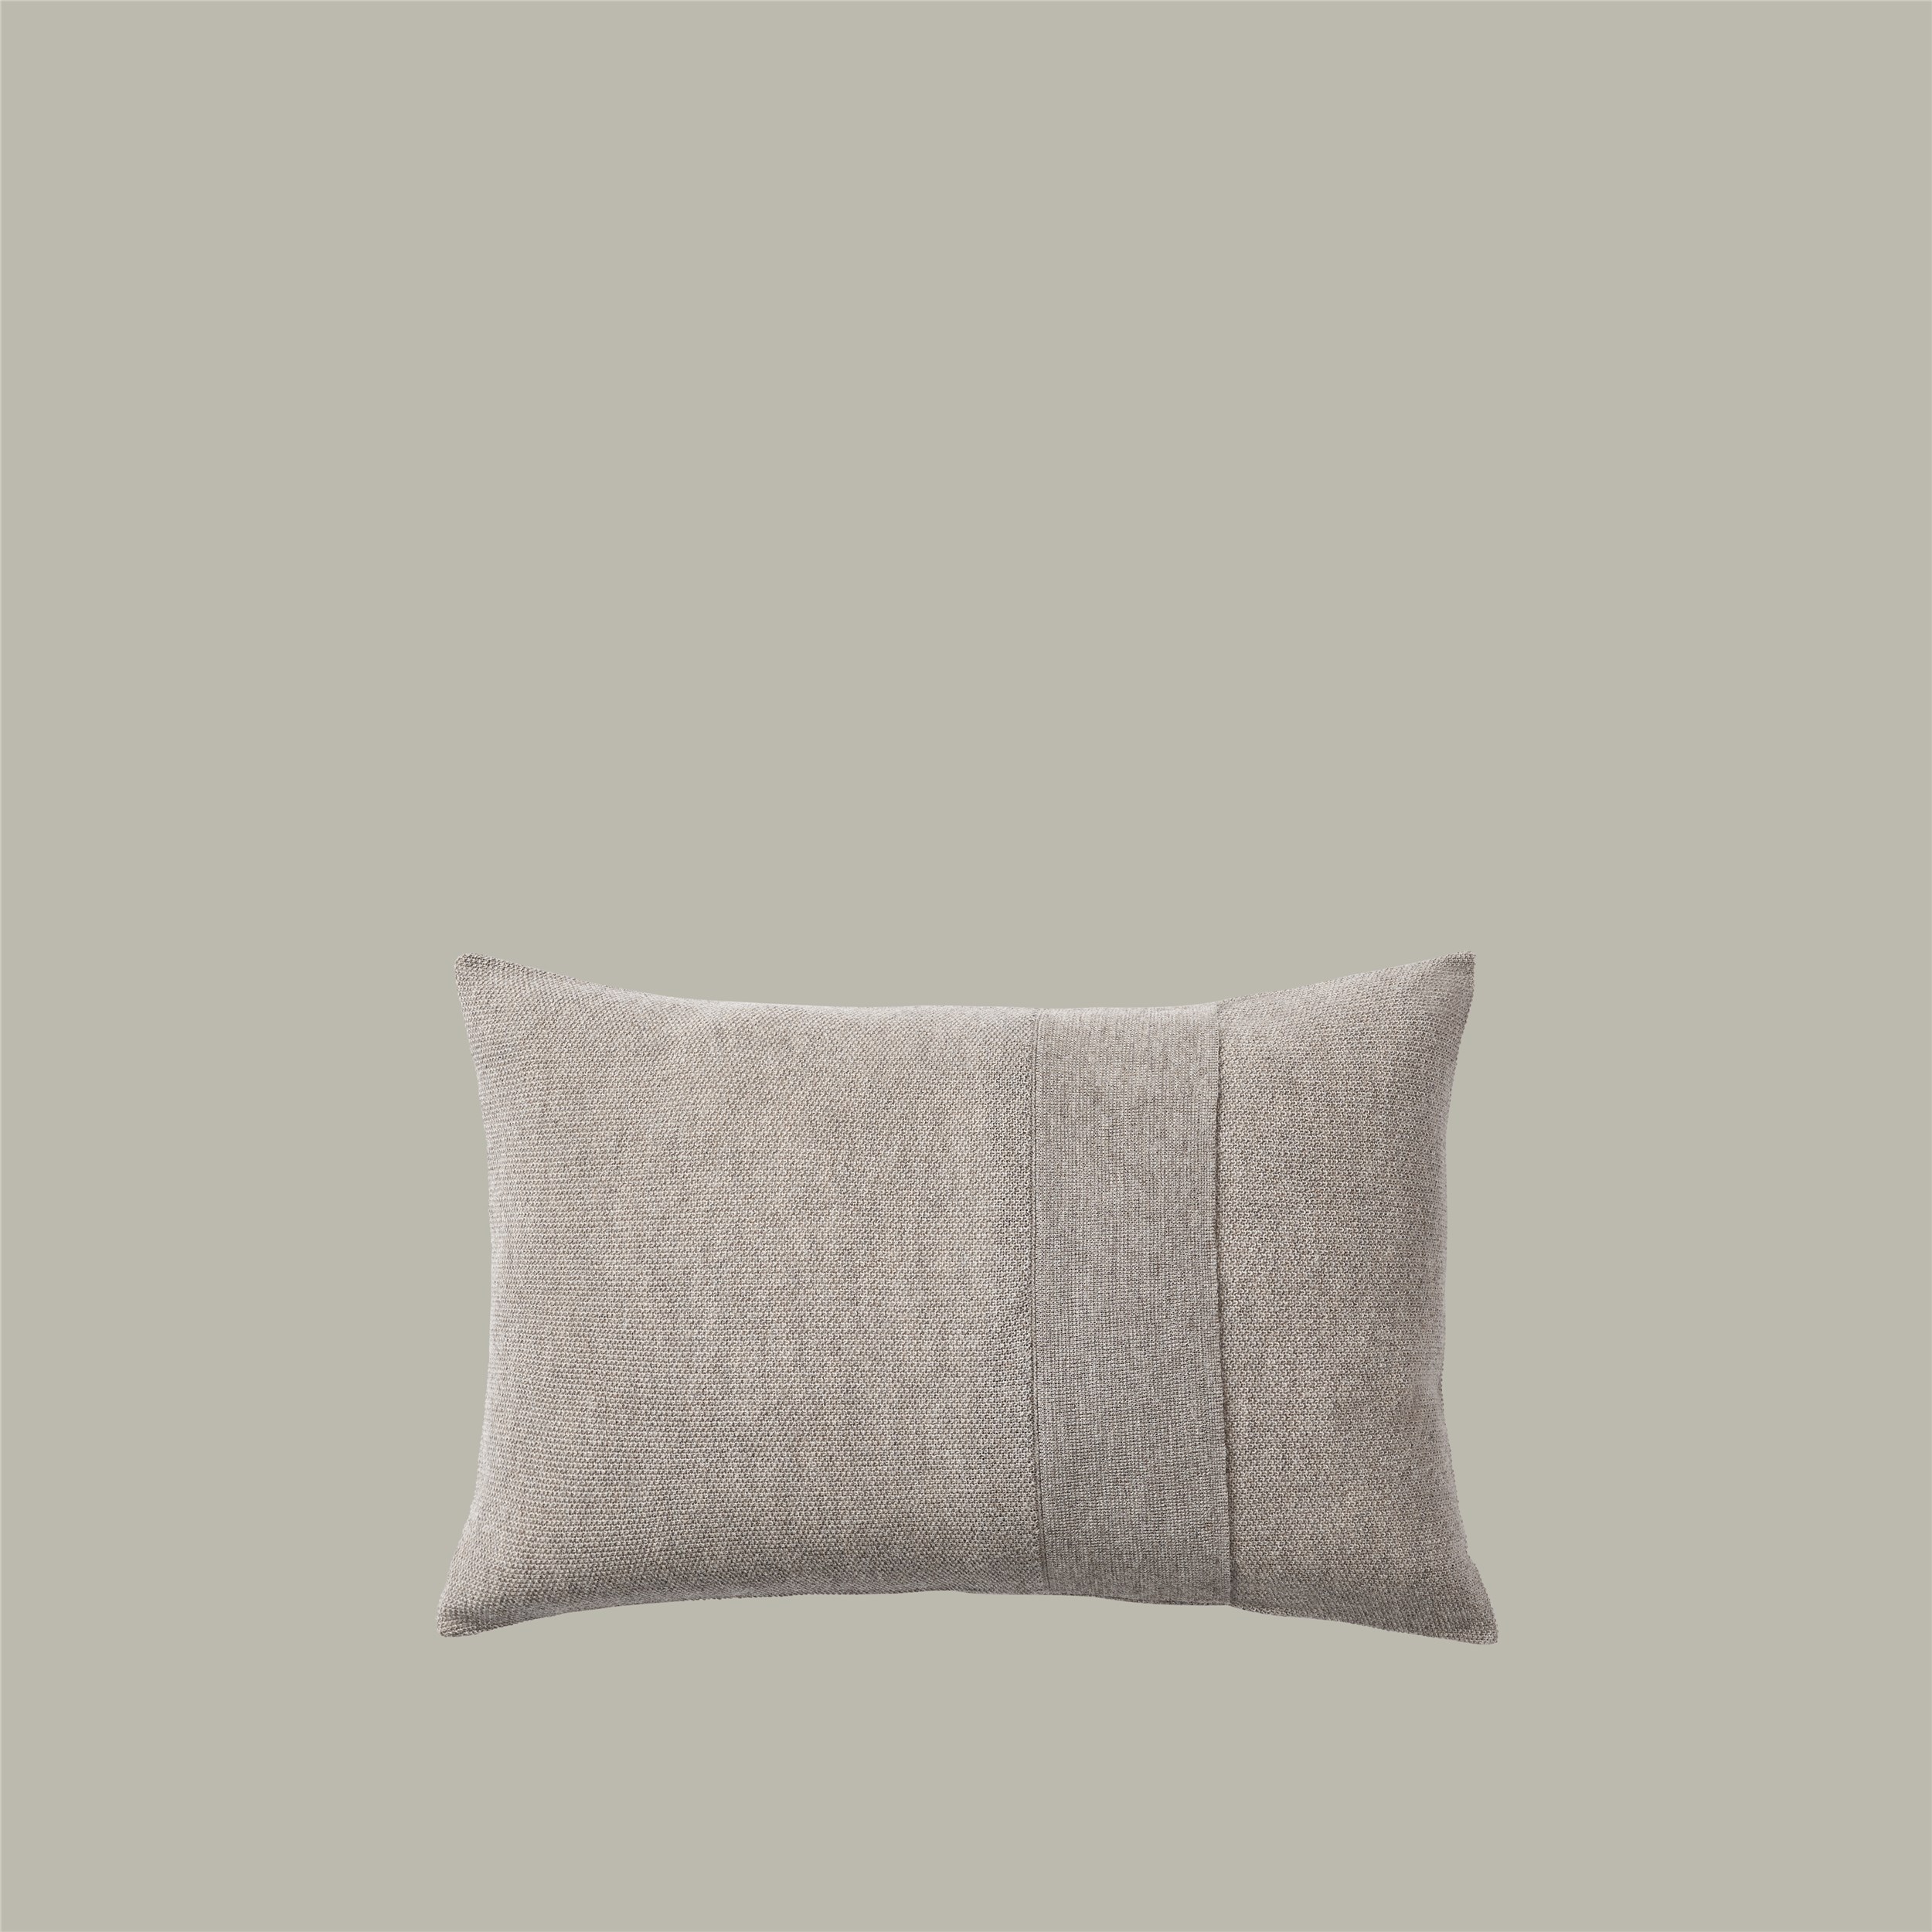 Layer Cushion 40x60 sand grey